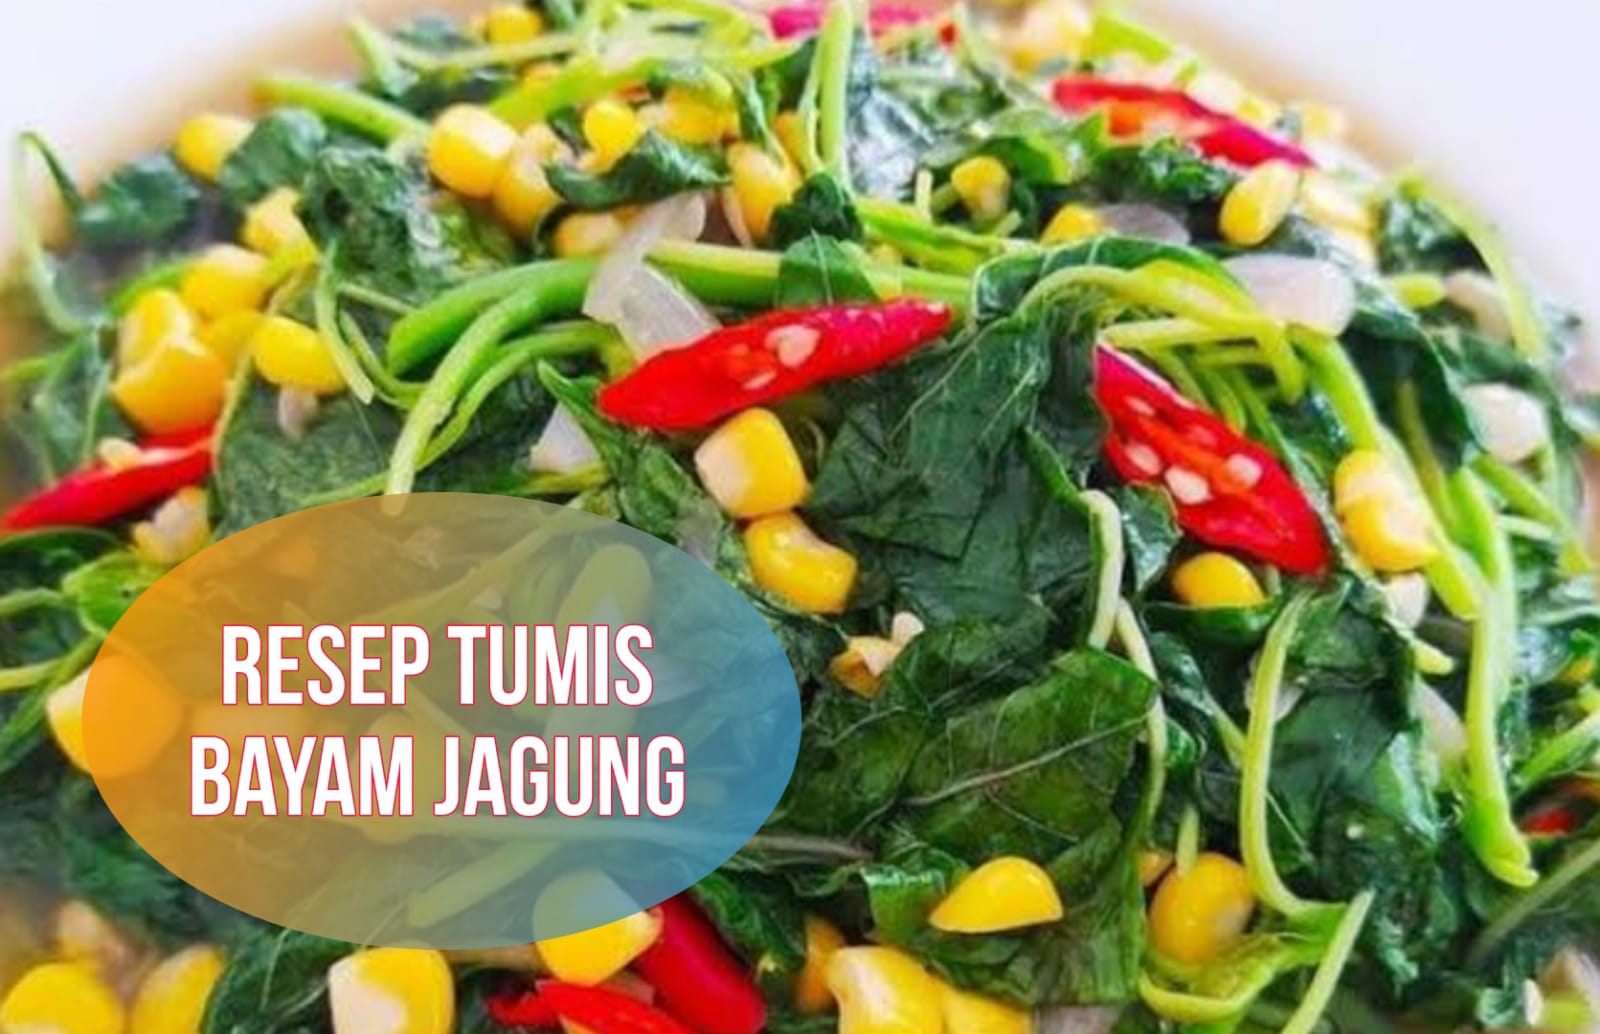 Resep Tumis Bayam Jagung, Olahan Lezat dan Sehat untuk Makan Malam, Dijamin Suka!